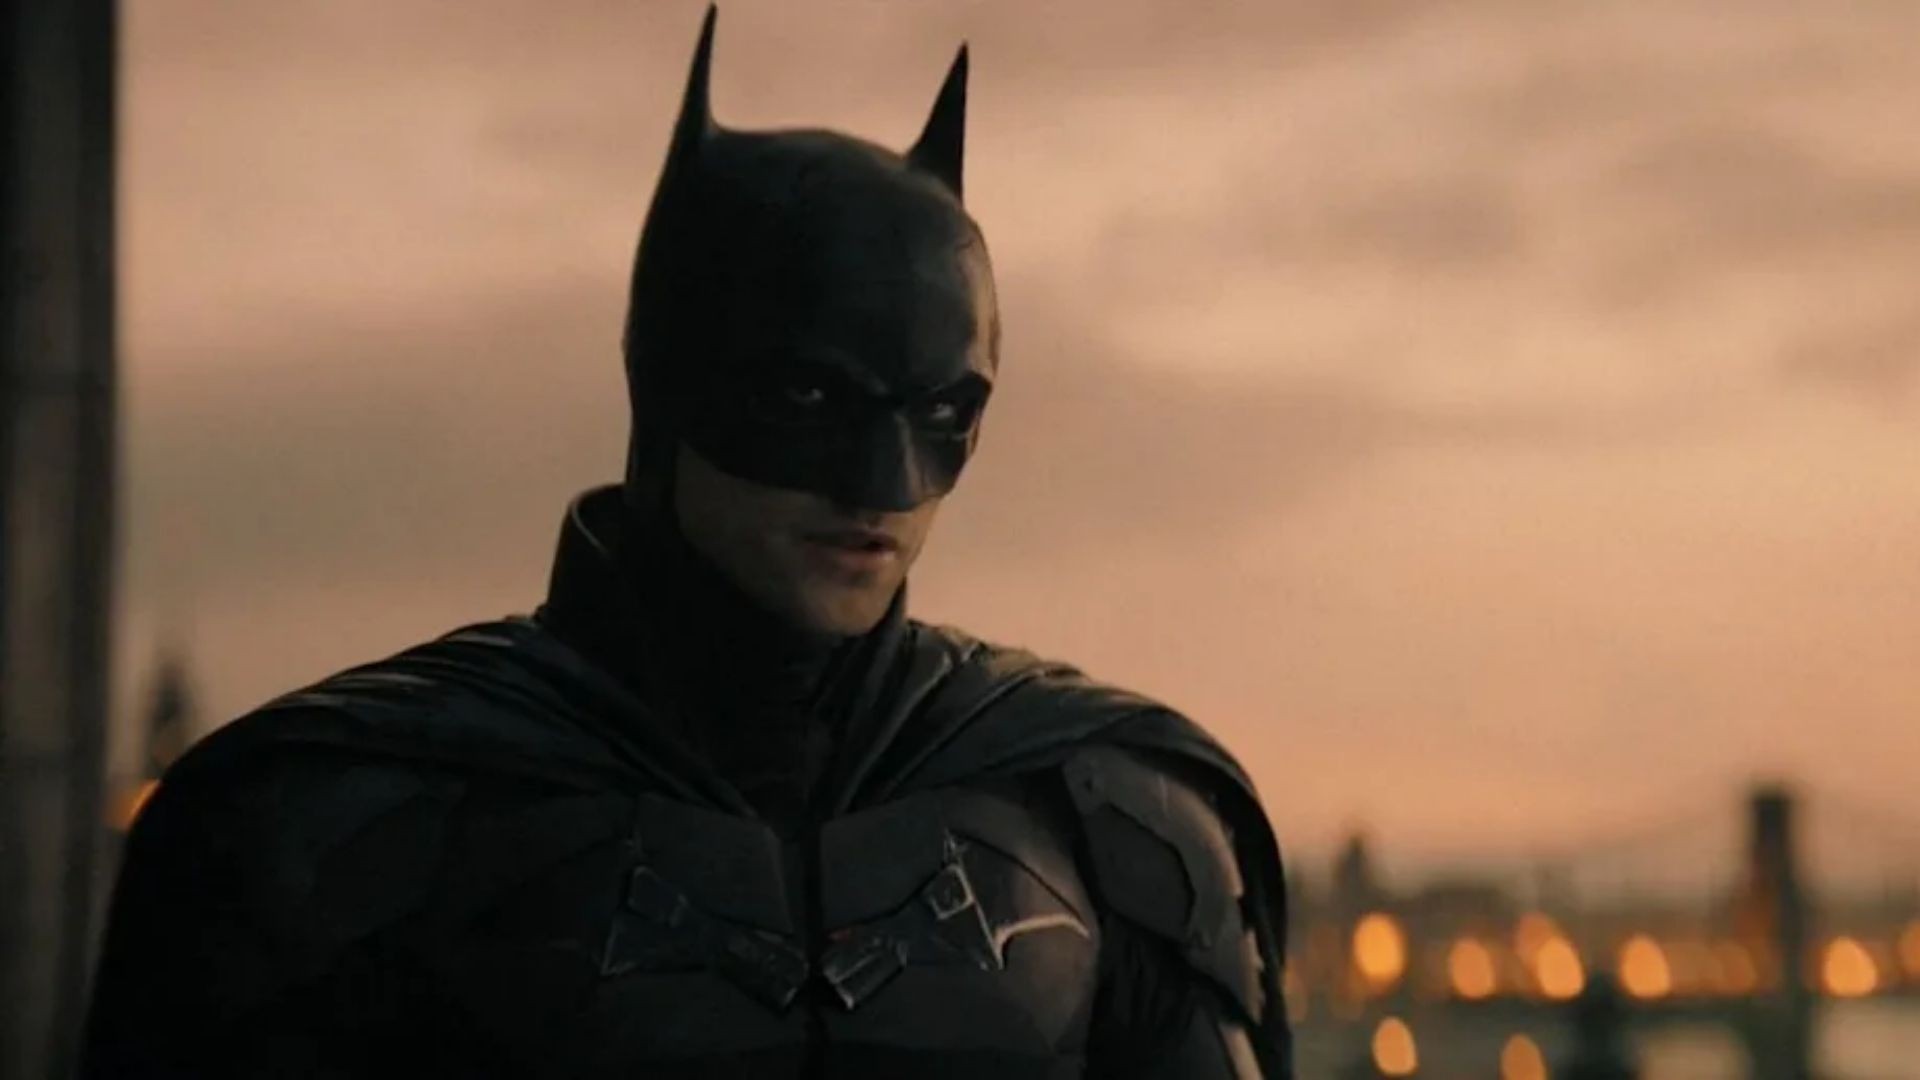 Novo desenho do Batman será lançado no HBO Max - Olhar Digital